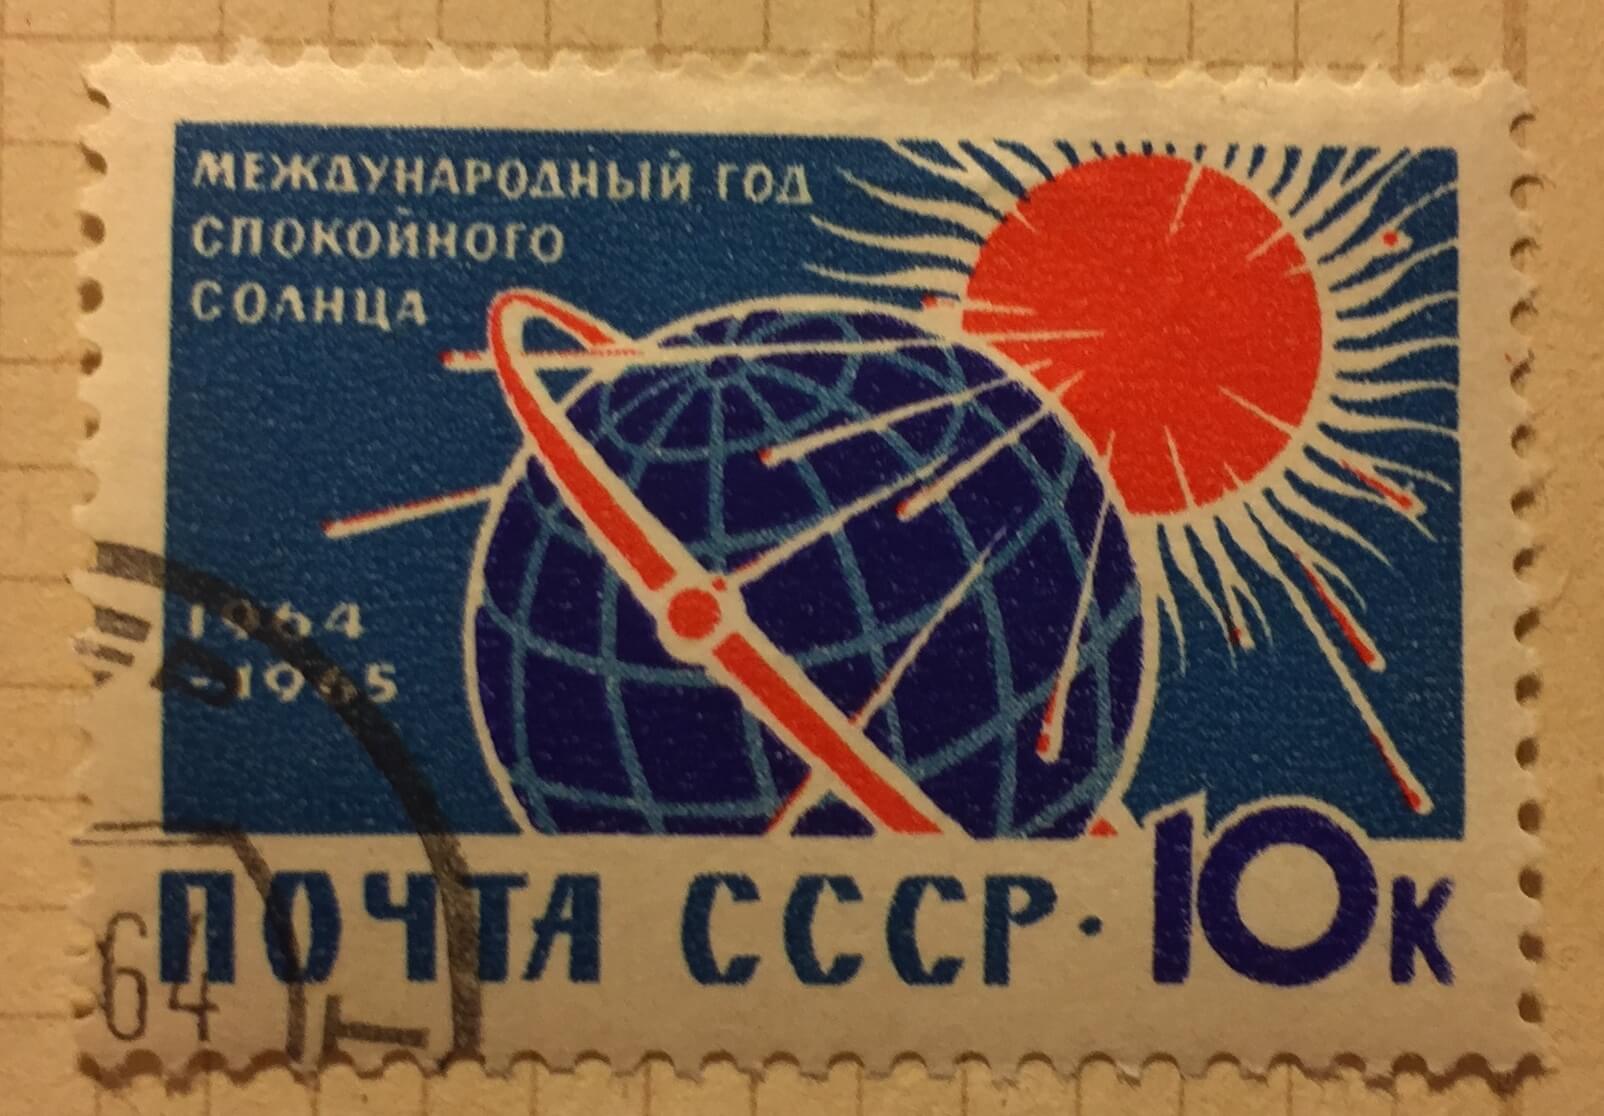 Советское международное право. Международный год спокойного солнца. Почтовая марка солнце. Почтовая марка космический корабль. Космические марки СССР.